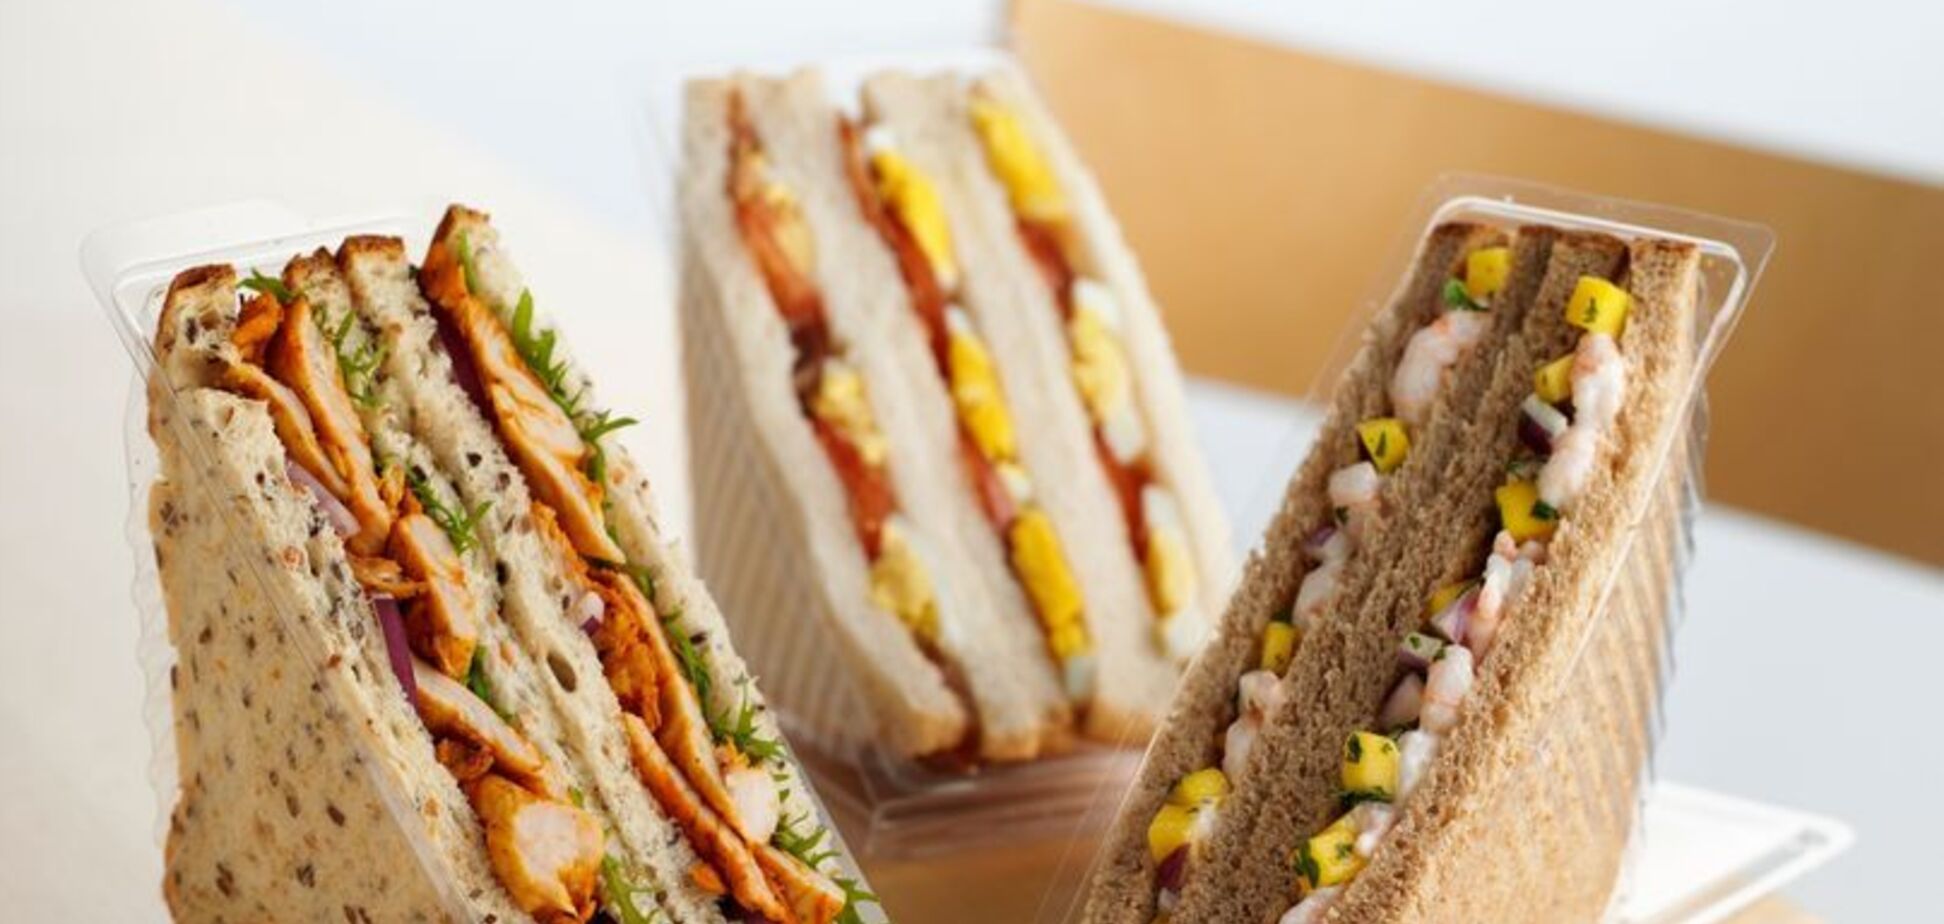 Упакованные сэндвичи из магазинов оказались смертельно опасными